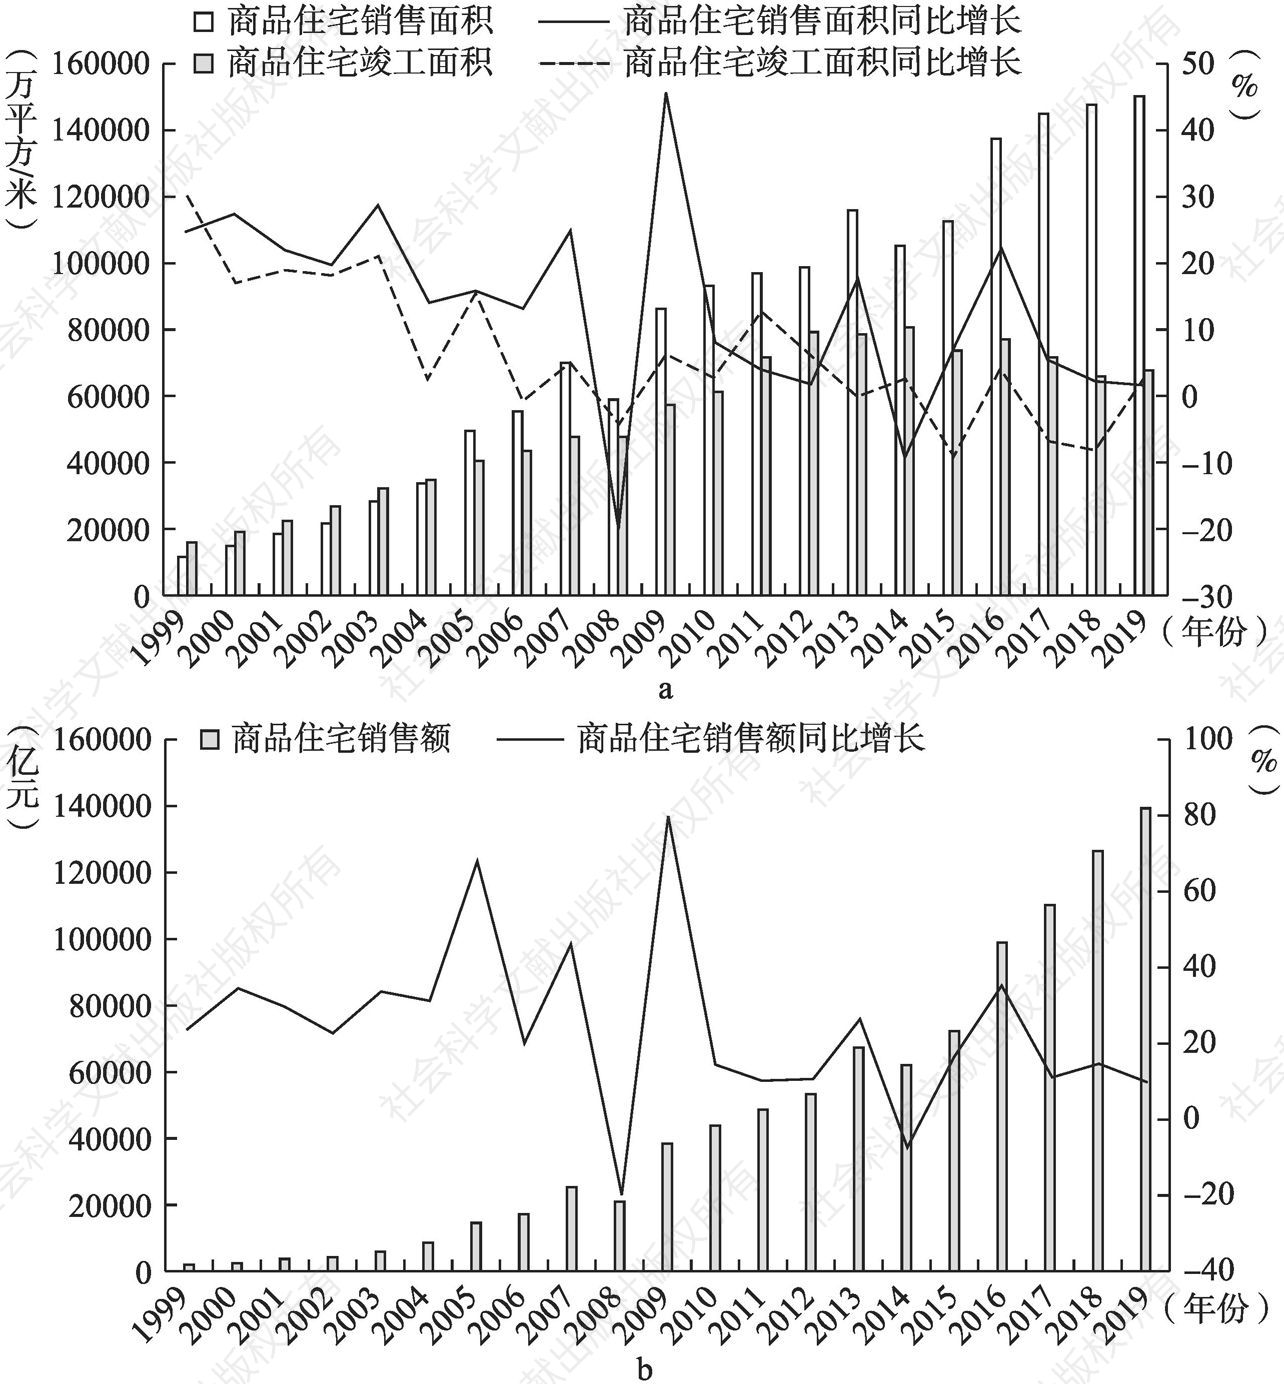 图1-4 1999～2019年商品住宅销售面积、竣工面积、销售额及其同比增长情况